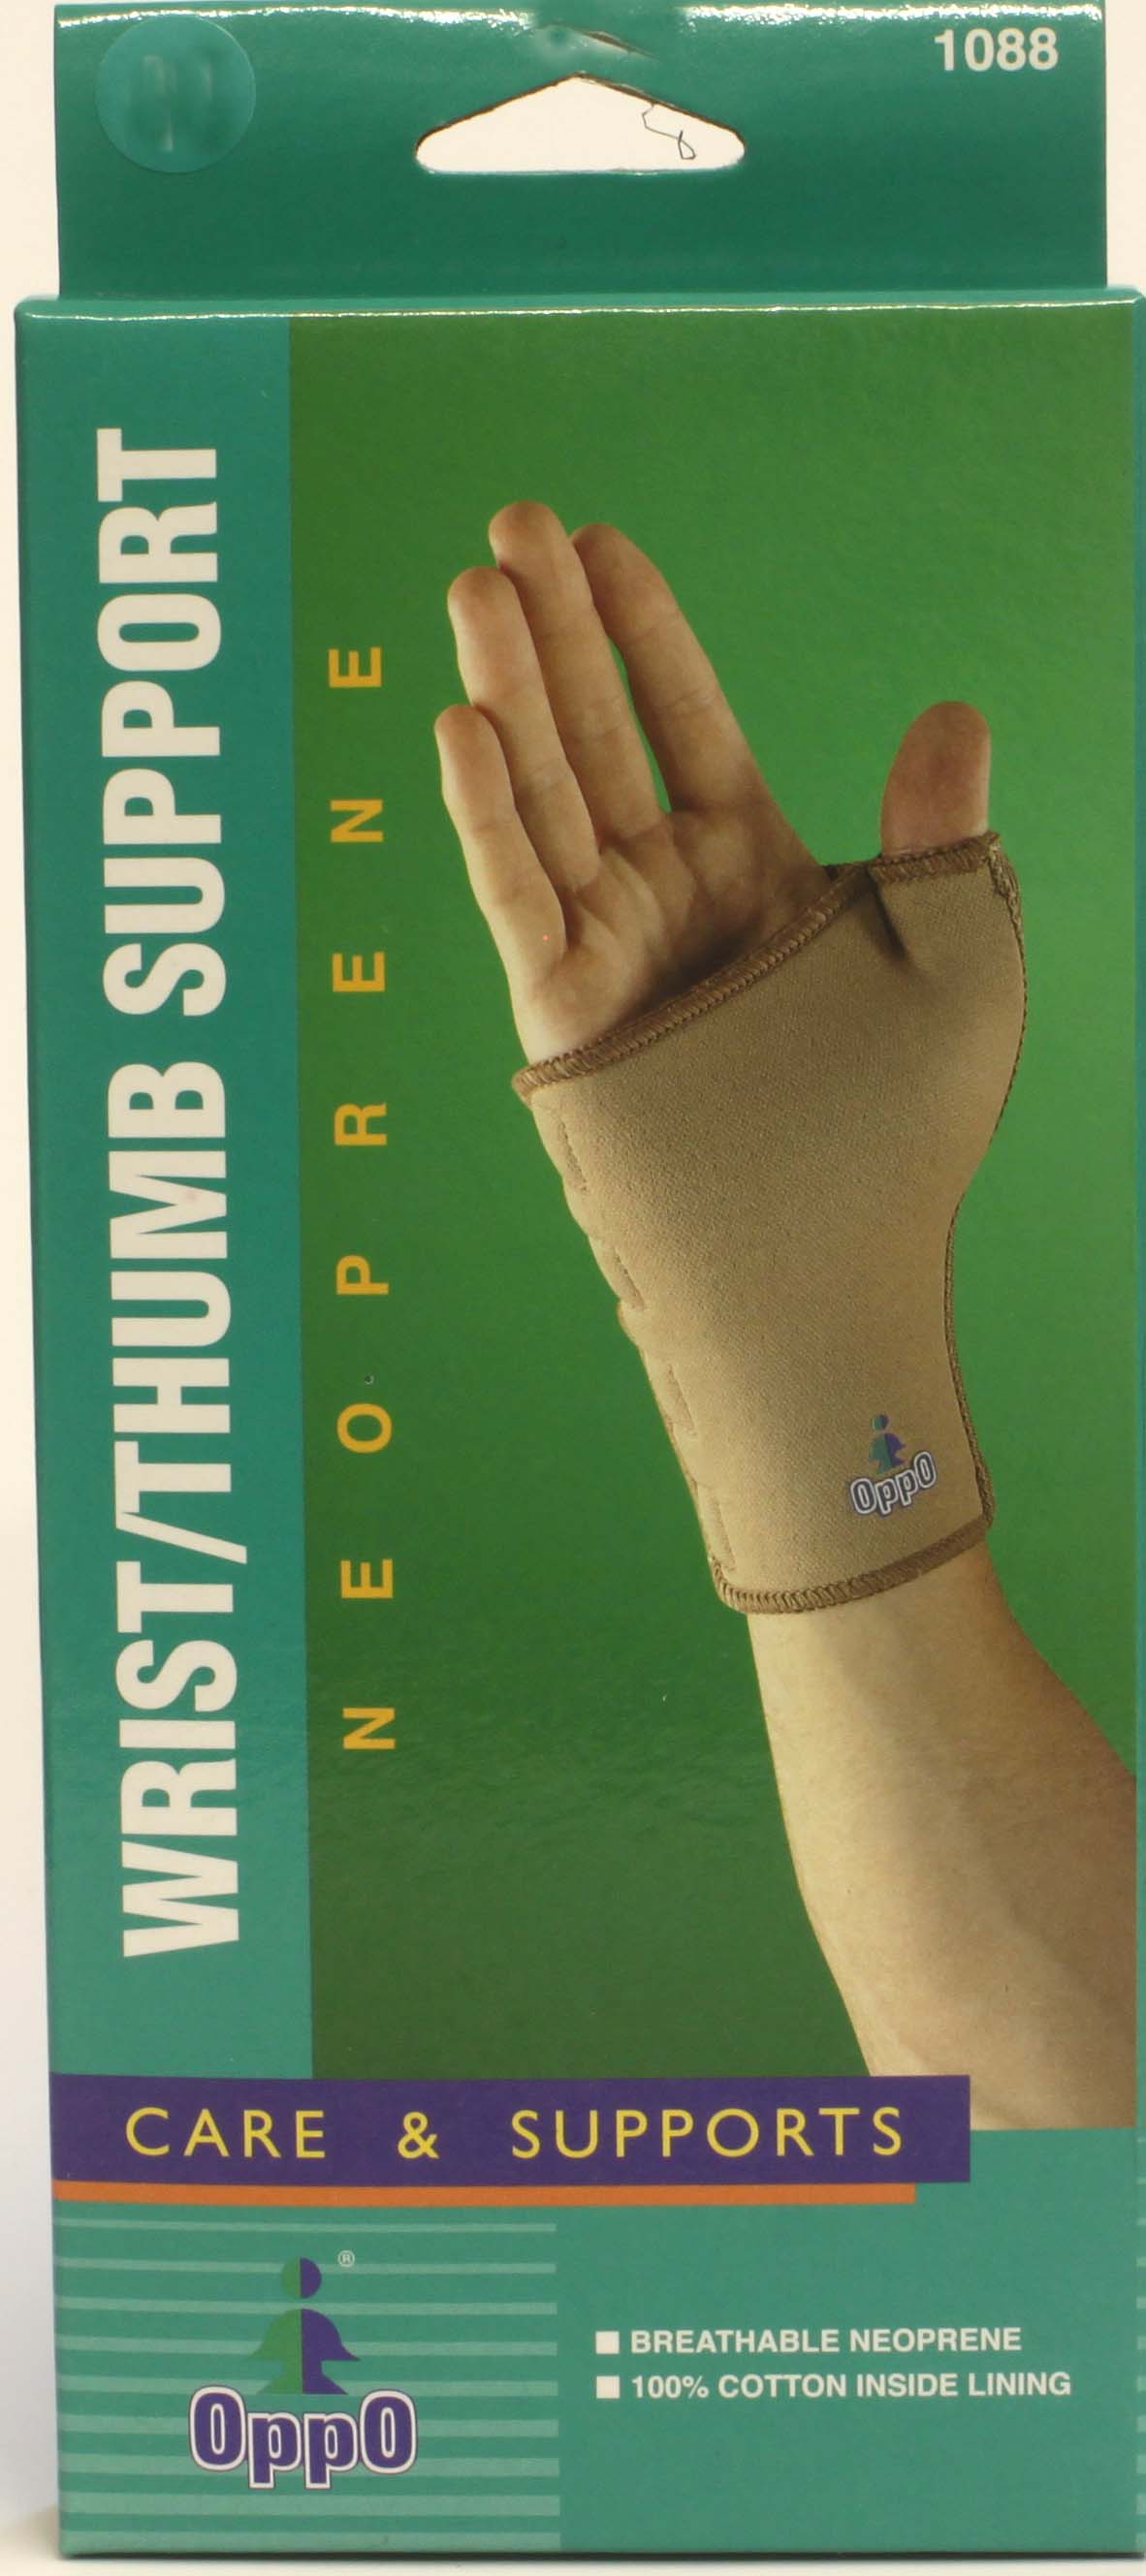 Oppo Wrist/Thumb Support Neoprene -Large (1088)